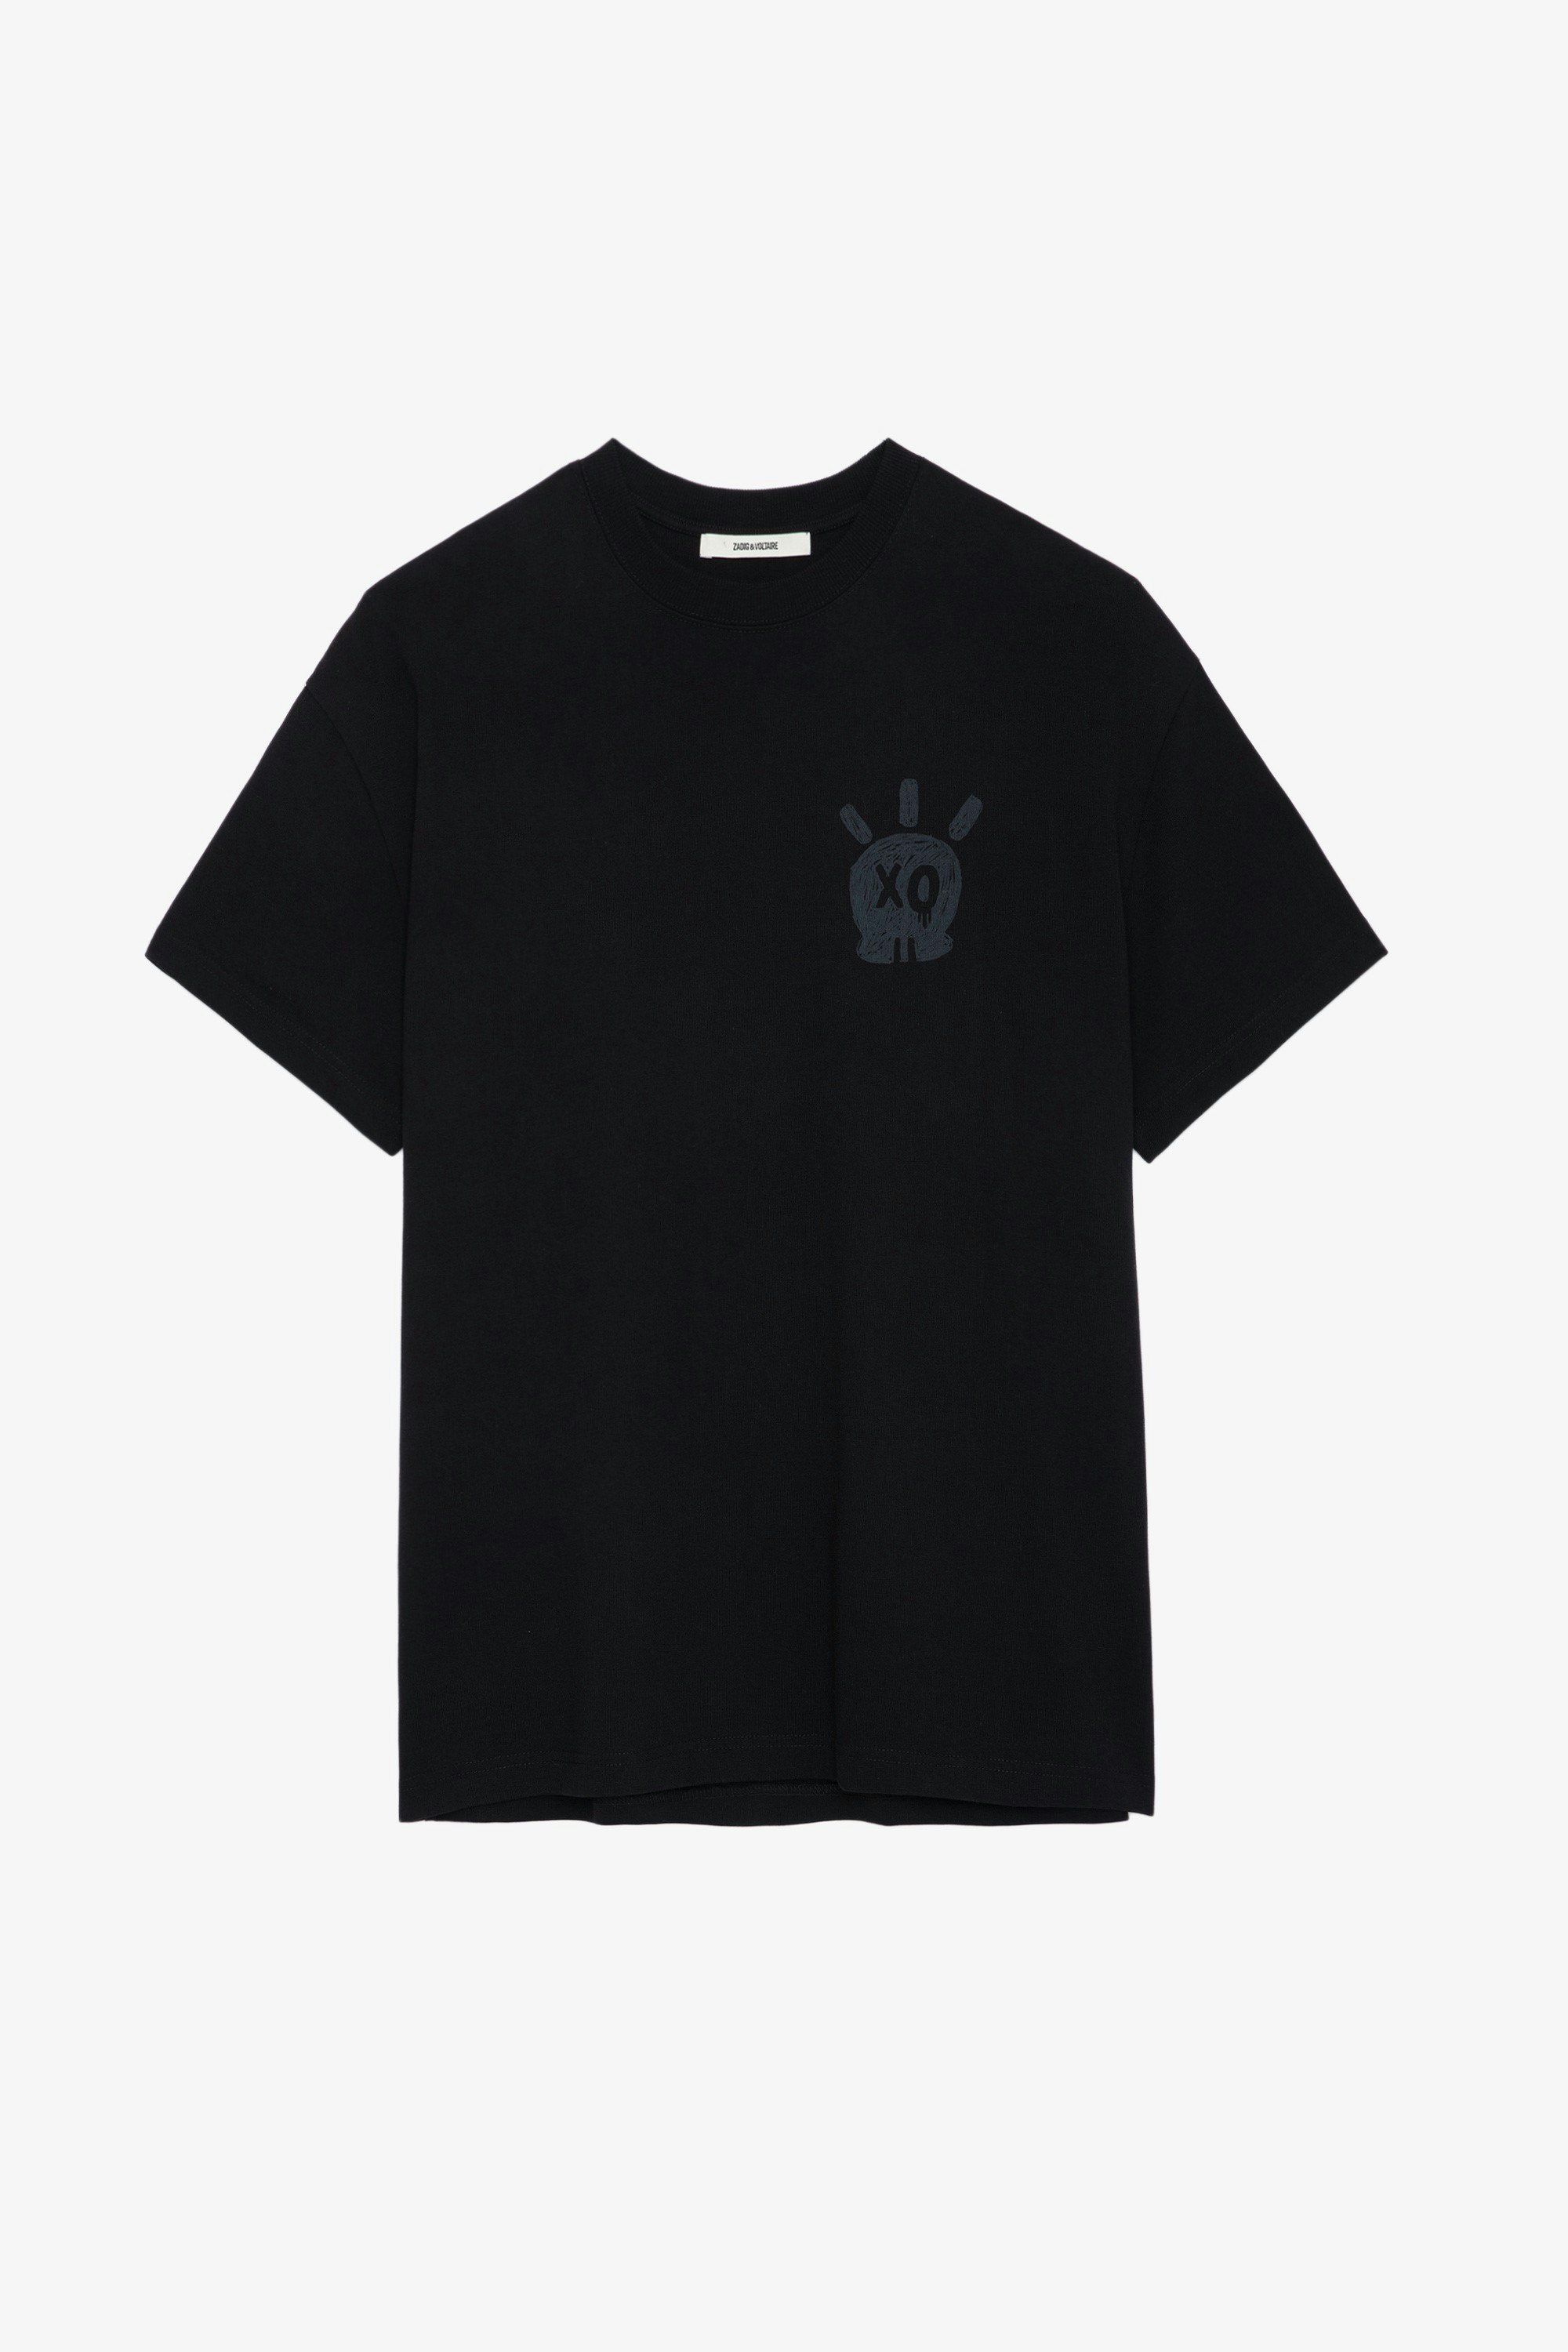 T-shirt Teddy Skull - T-shirt in cotone nero girocollo con maniche corte e stampa Skull XO.